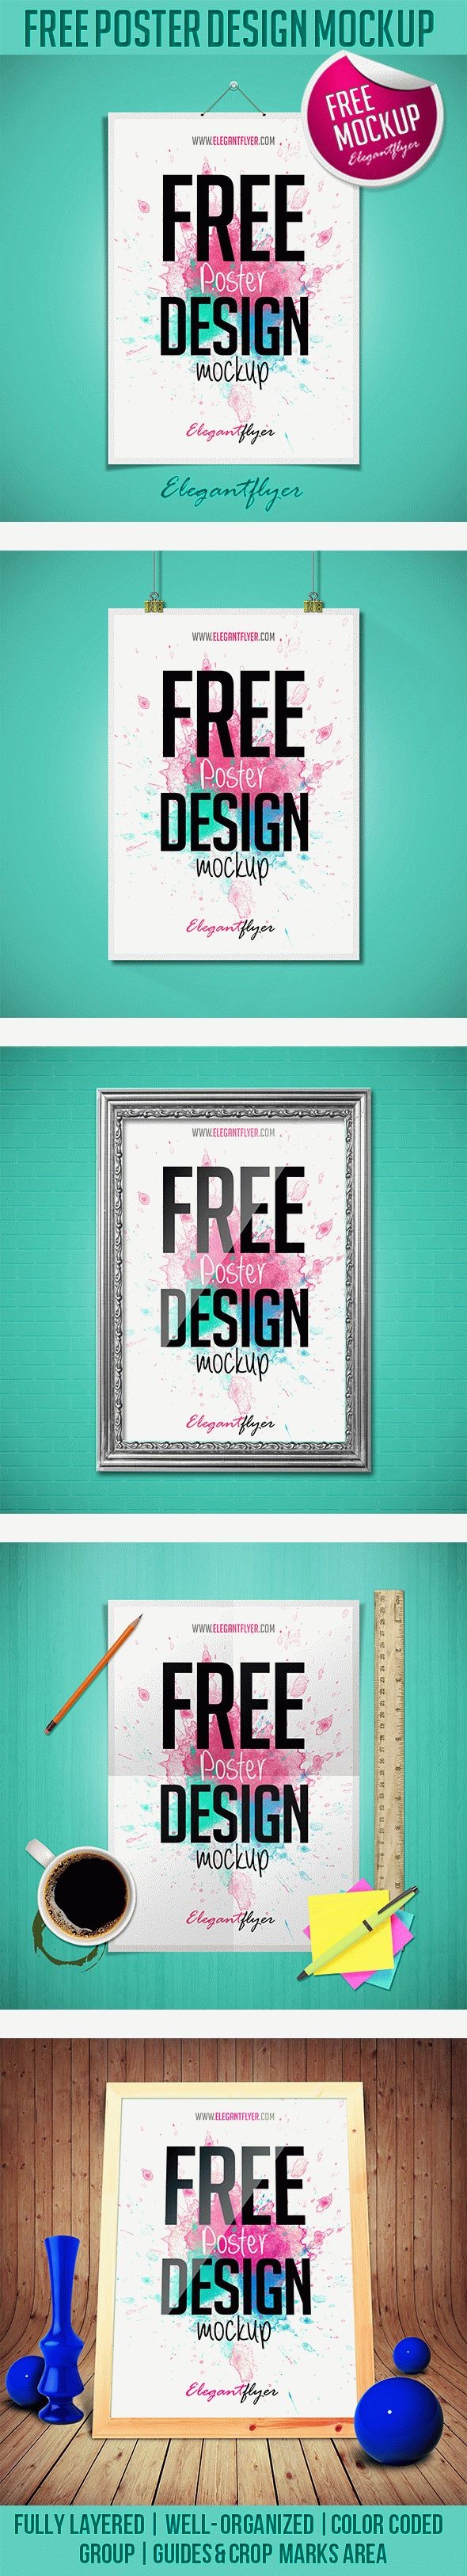 Free Poster Design Mockup by ElegantFlyer